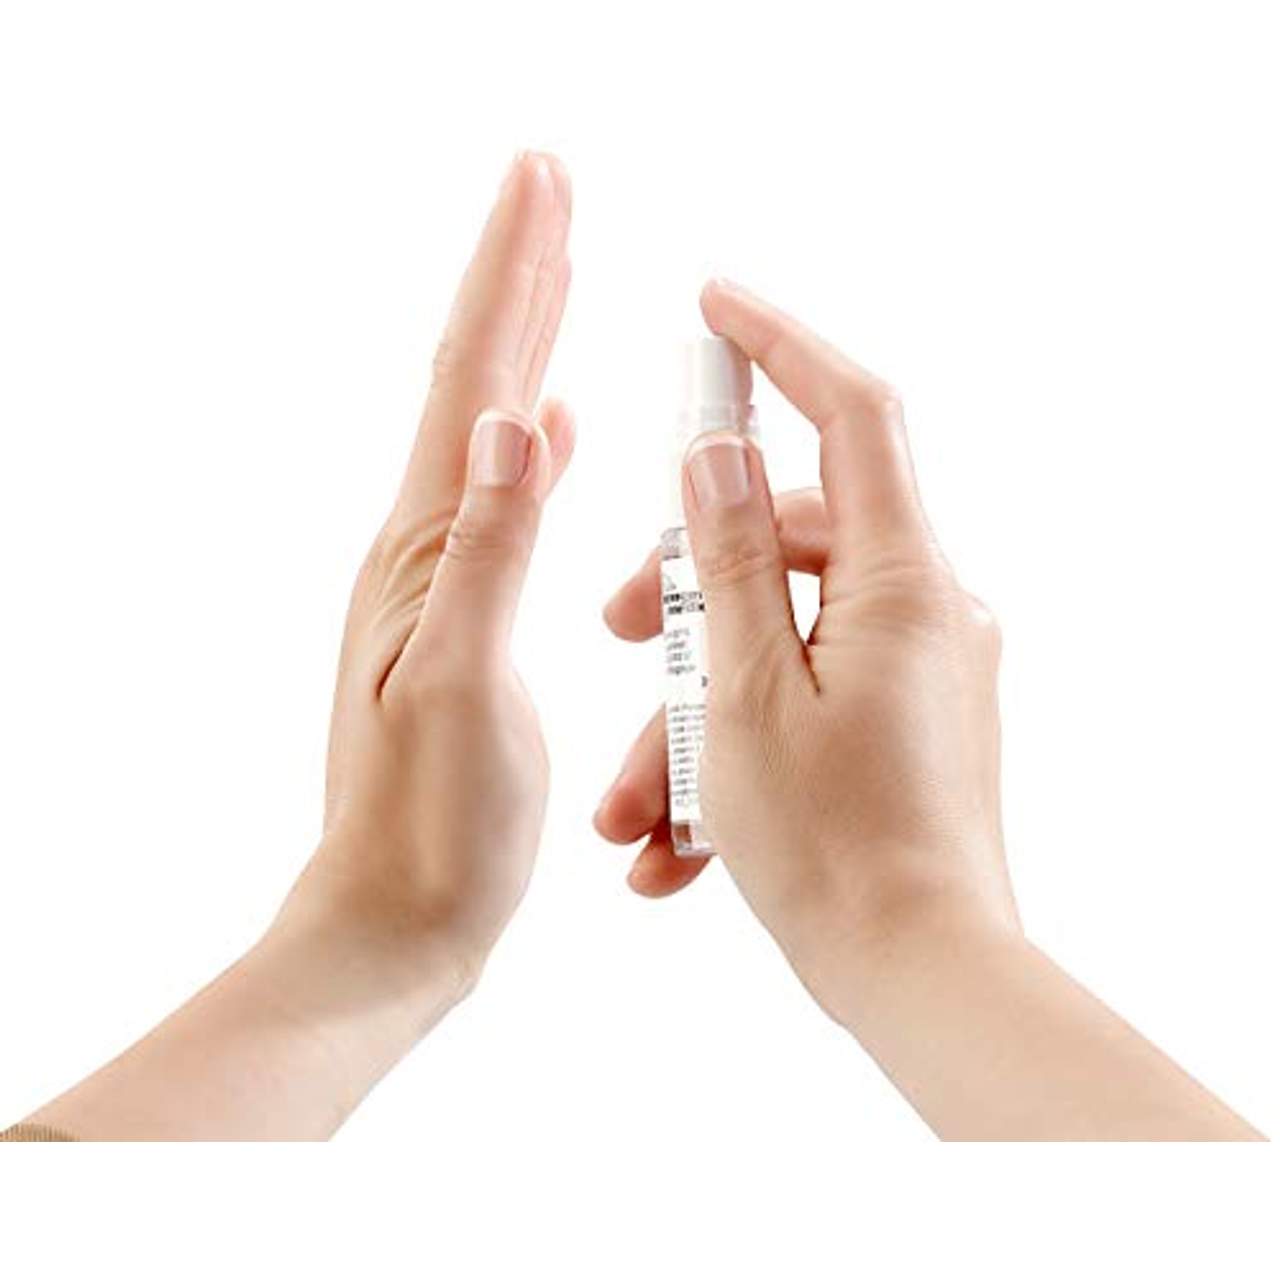 newgen medicals Handdesinfektion: 4er-Set Hand- & Flächen-Desinfektionsspray